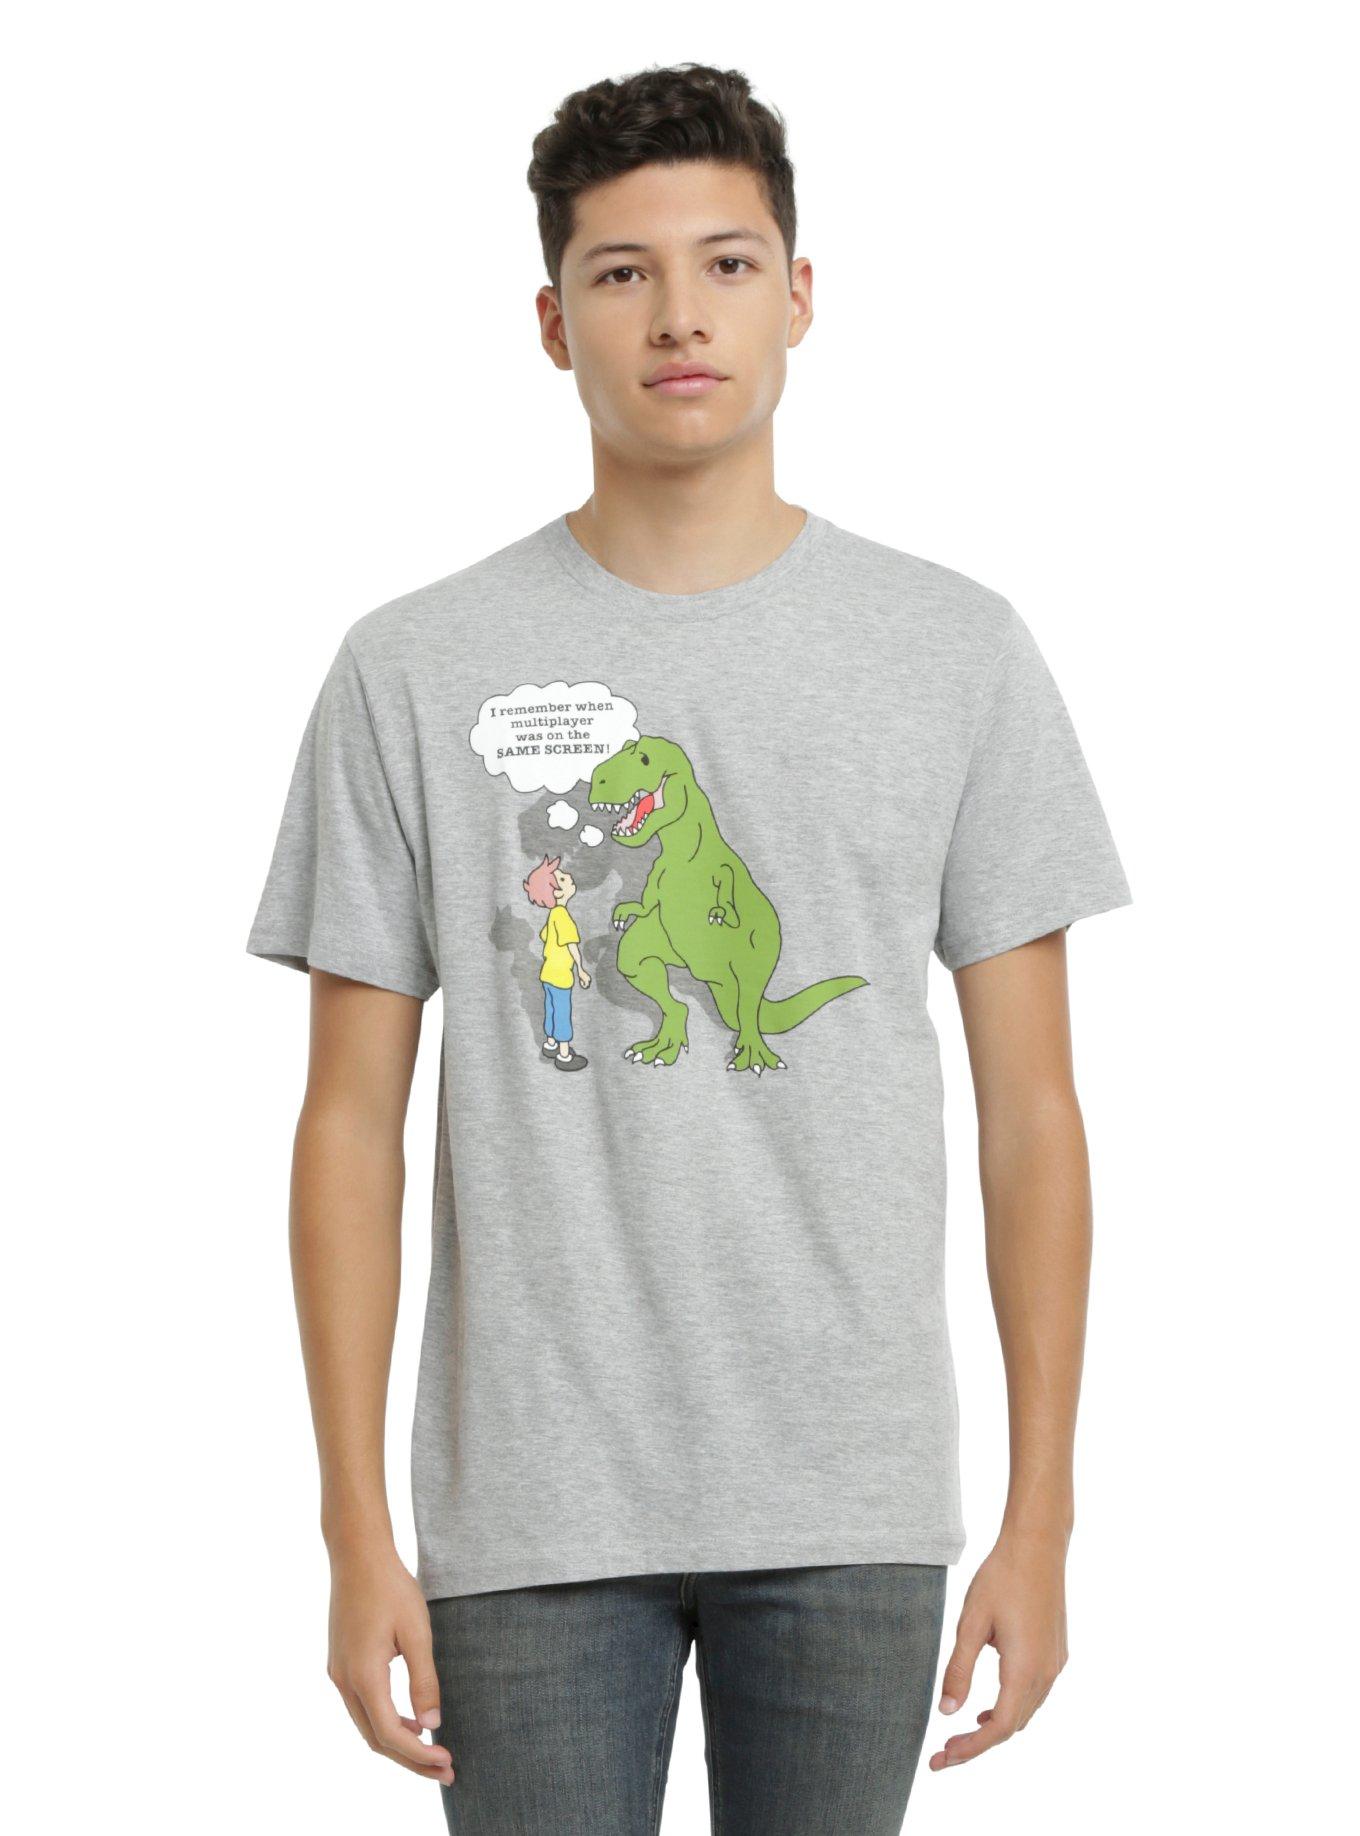 T-Rex Multiplayer Same Screen T-Shirt, , alternate